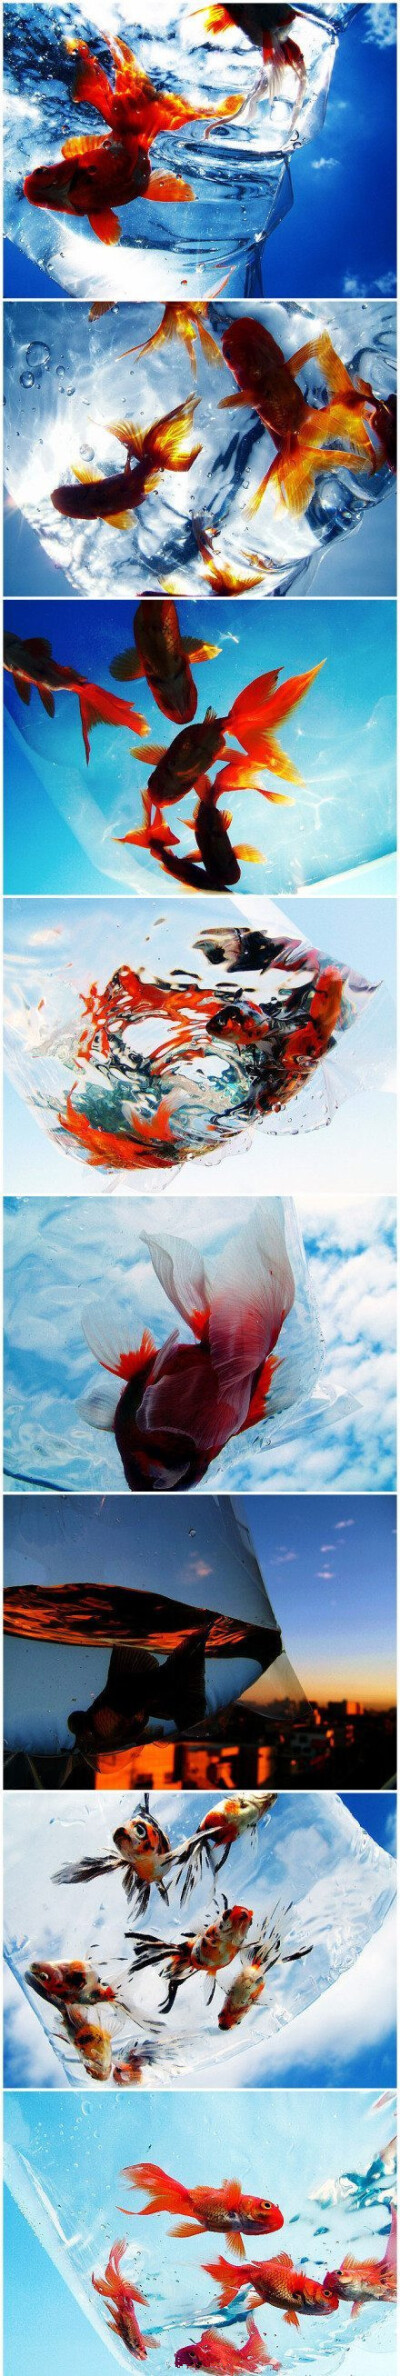 以天空为背景，装在塑料袋里的金鱼为前景，这是流行于日本的摄影新玩法。